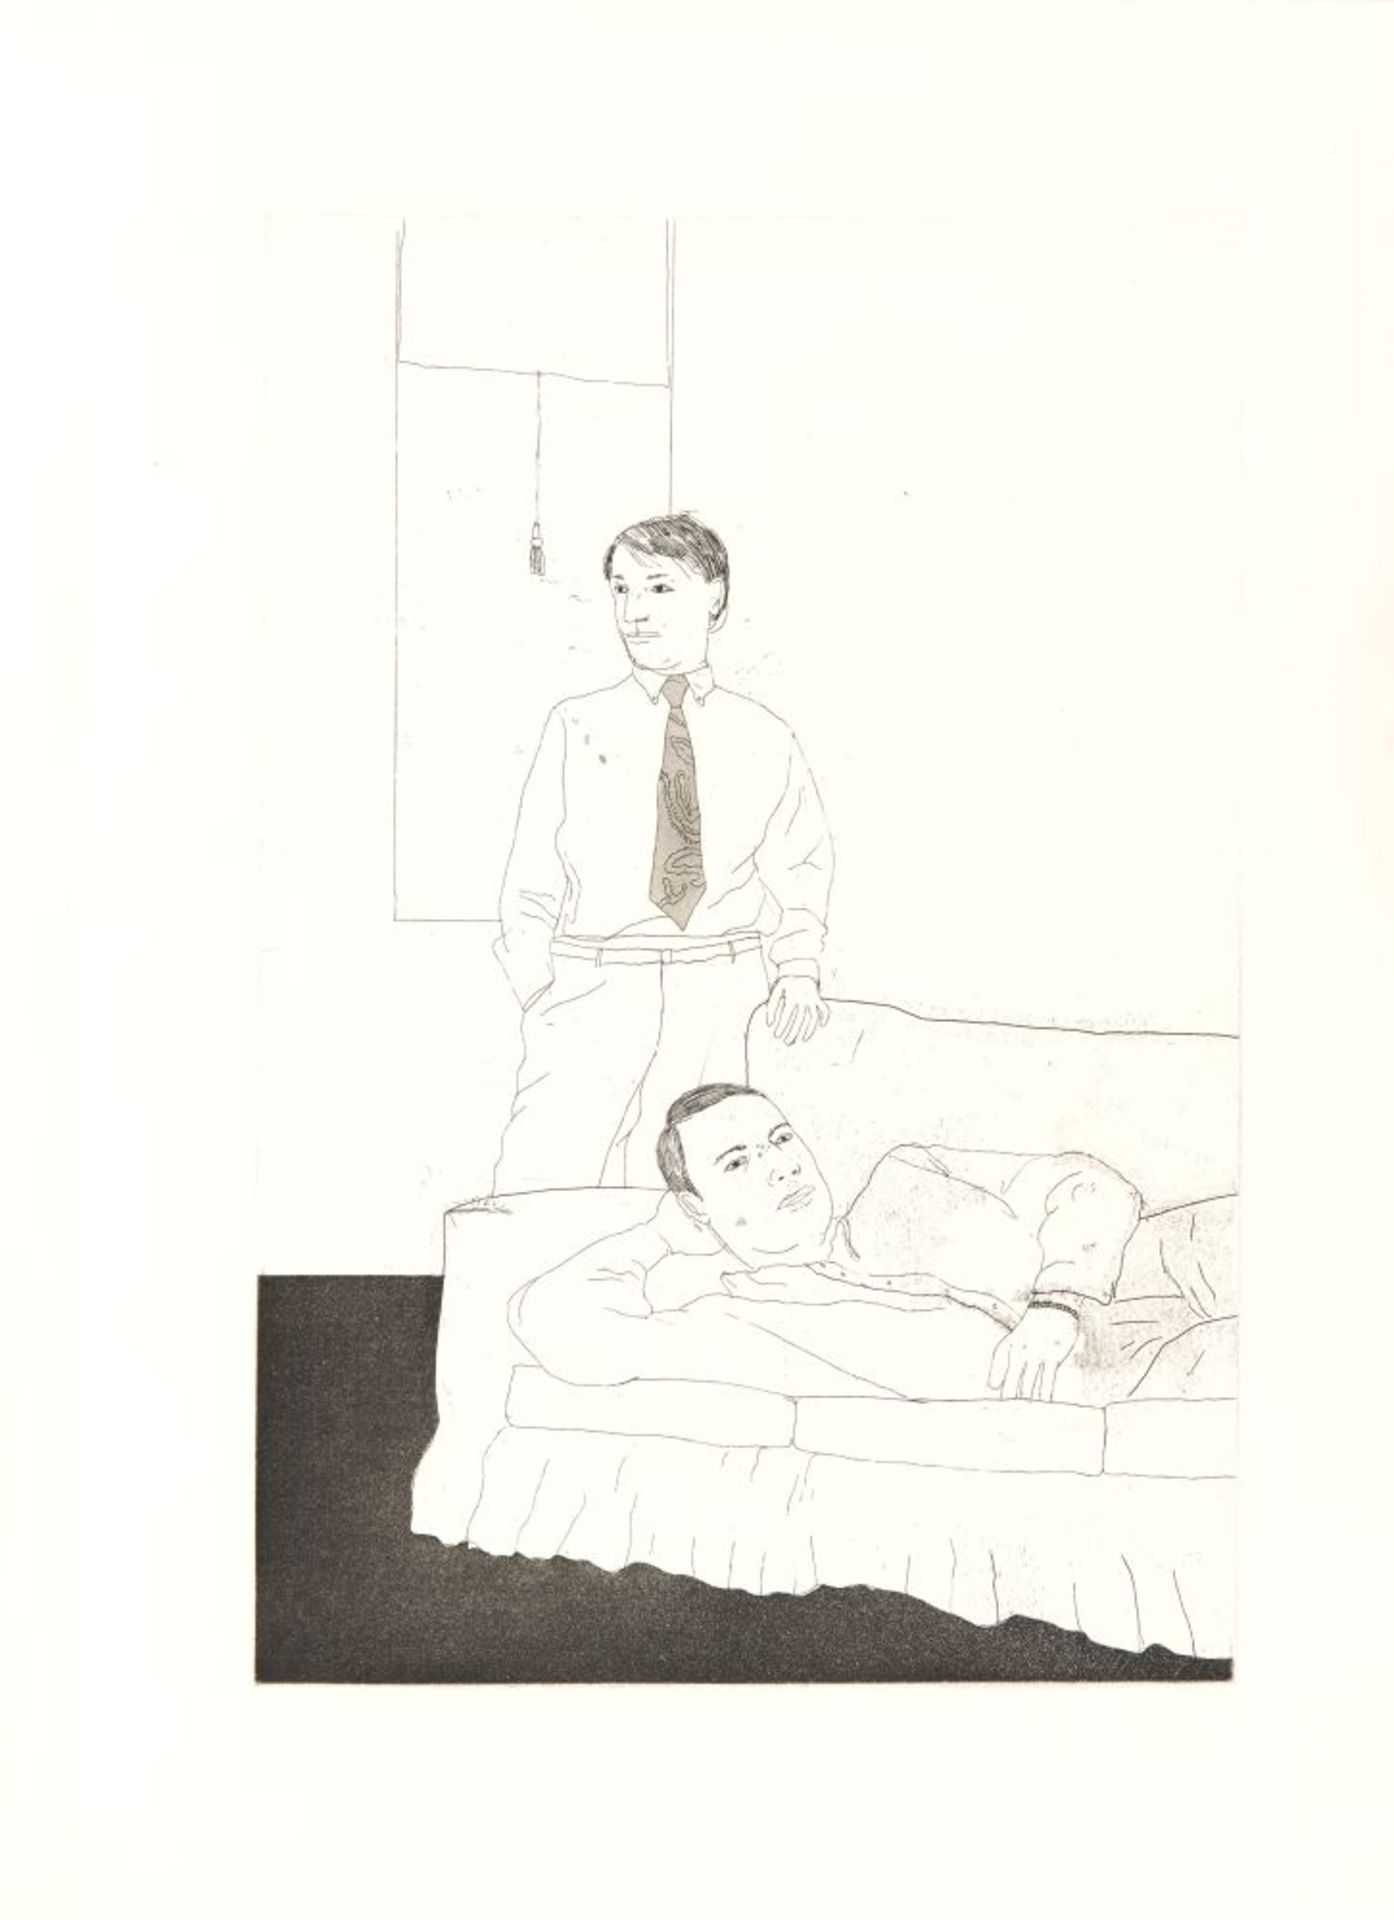 C. P. Cavafy / D. Hockney, Fourteen poems. Ldn 1967. - Eines von 250 Ex. der Edition B, sign. - Image 4 of 4